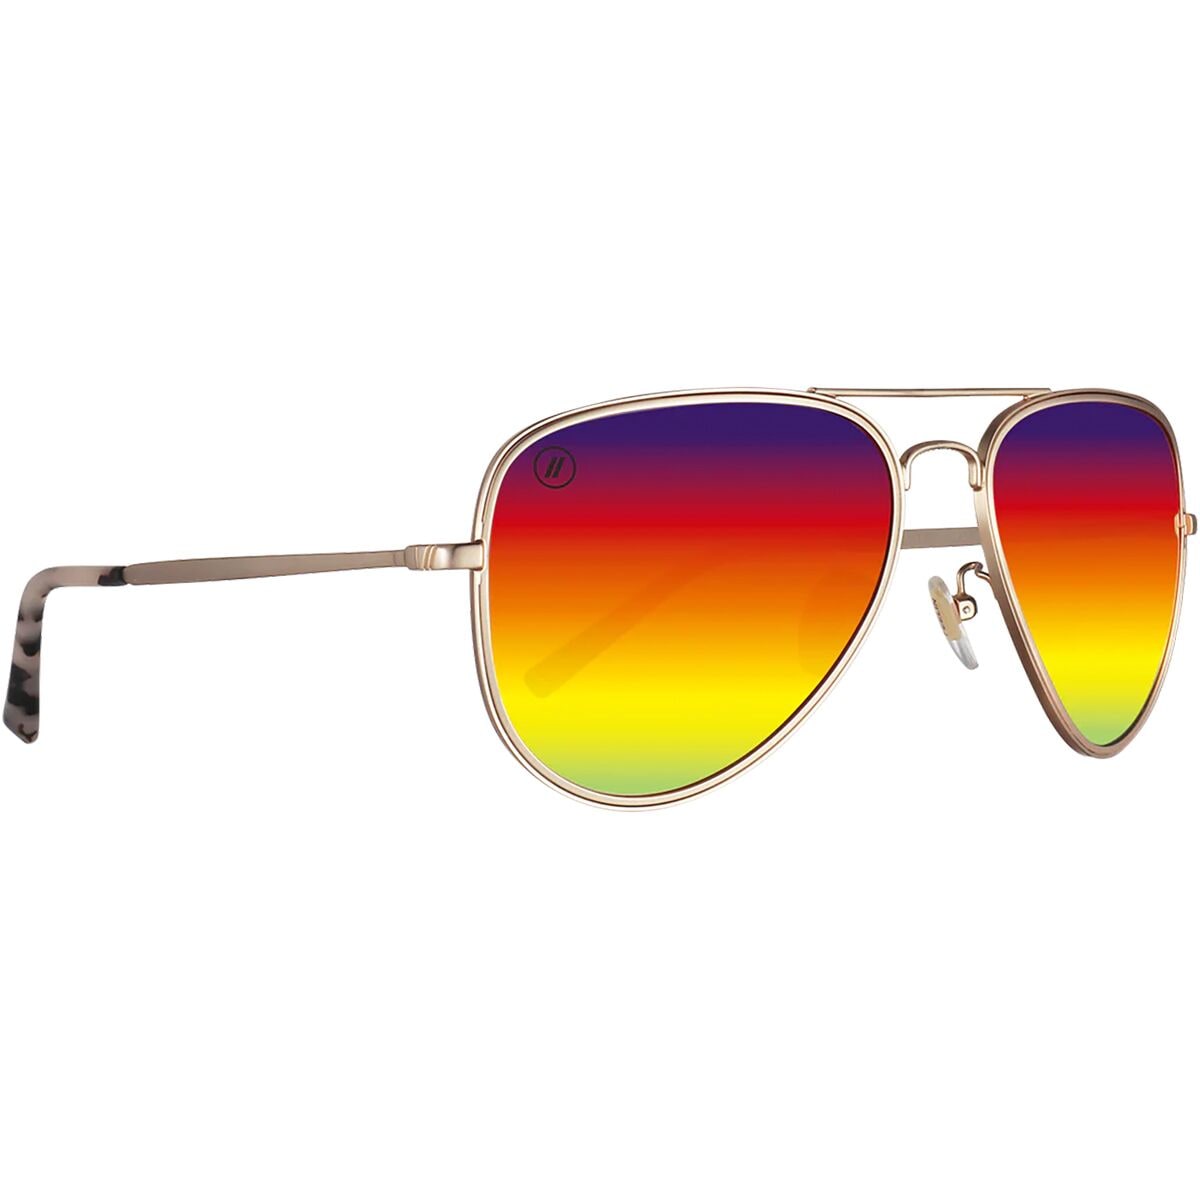 Поляризованные солнцезащитные очки серии a Blenders Eyewear, цвет arizona sun